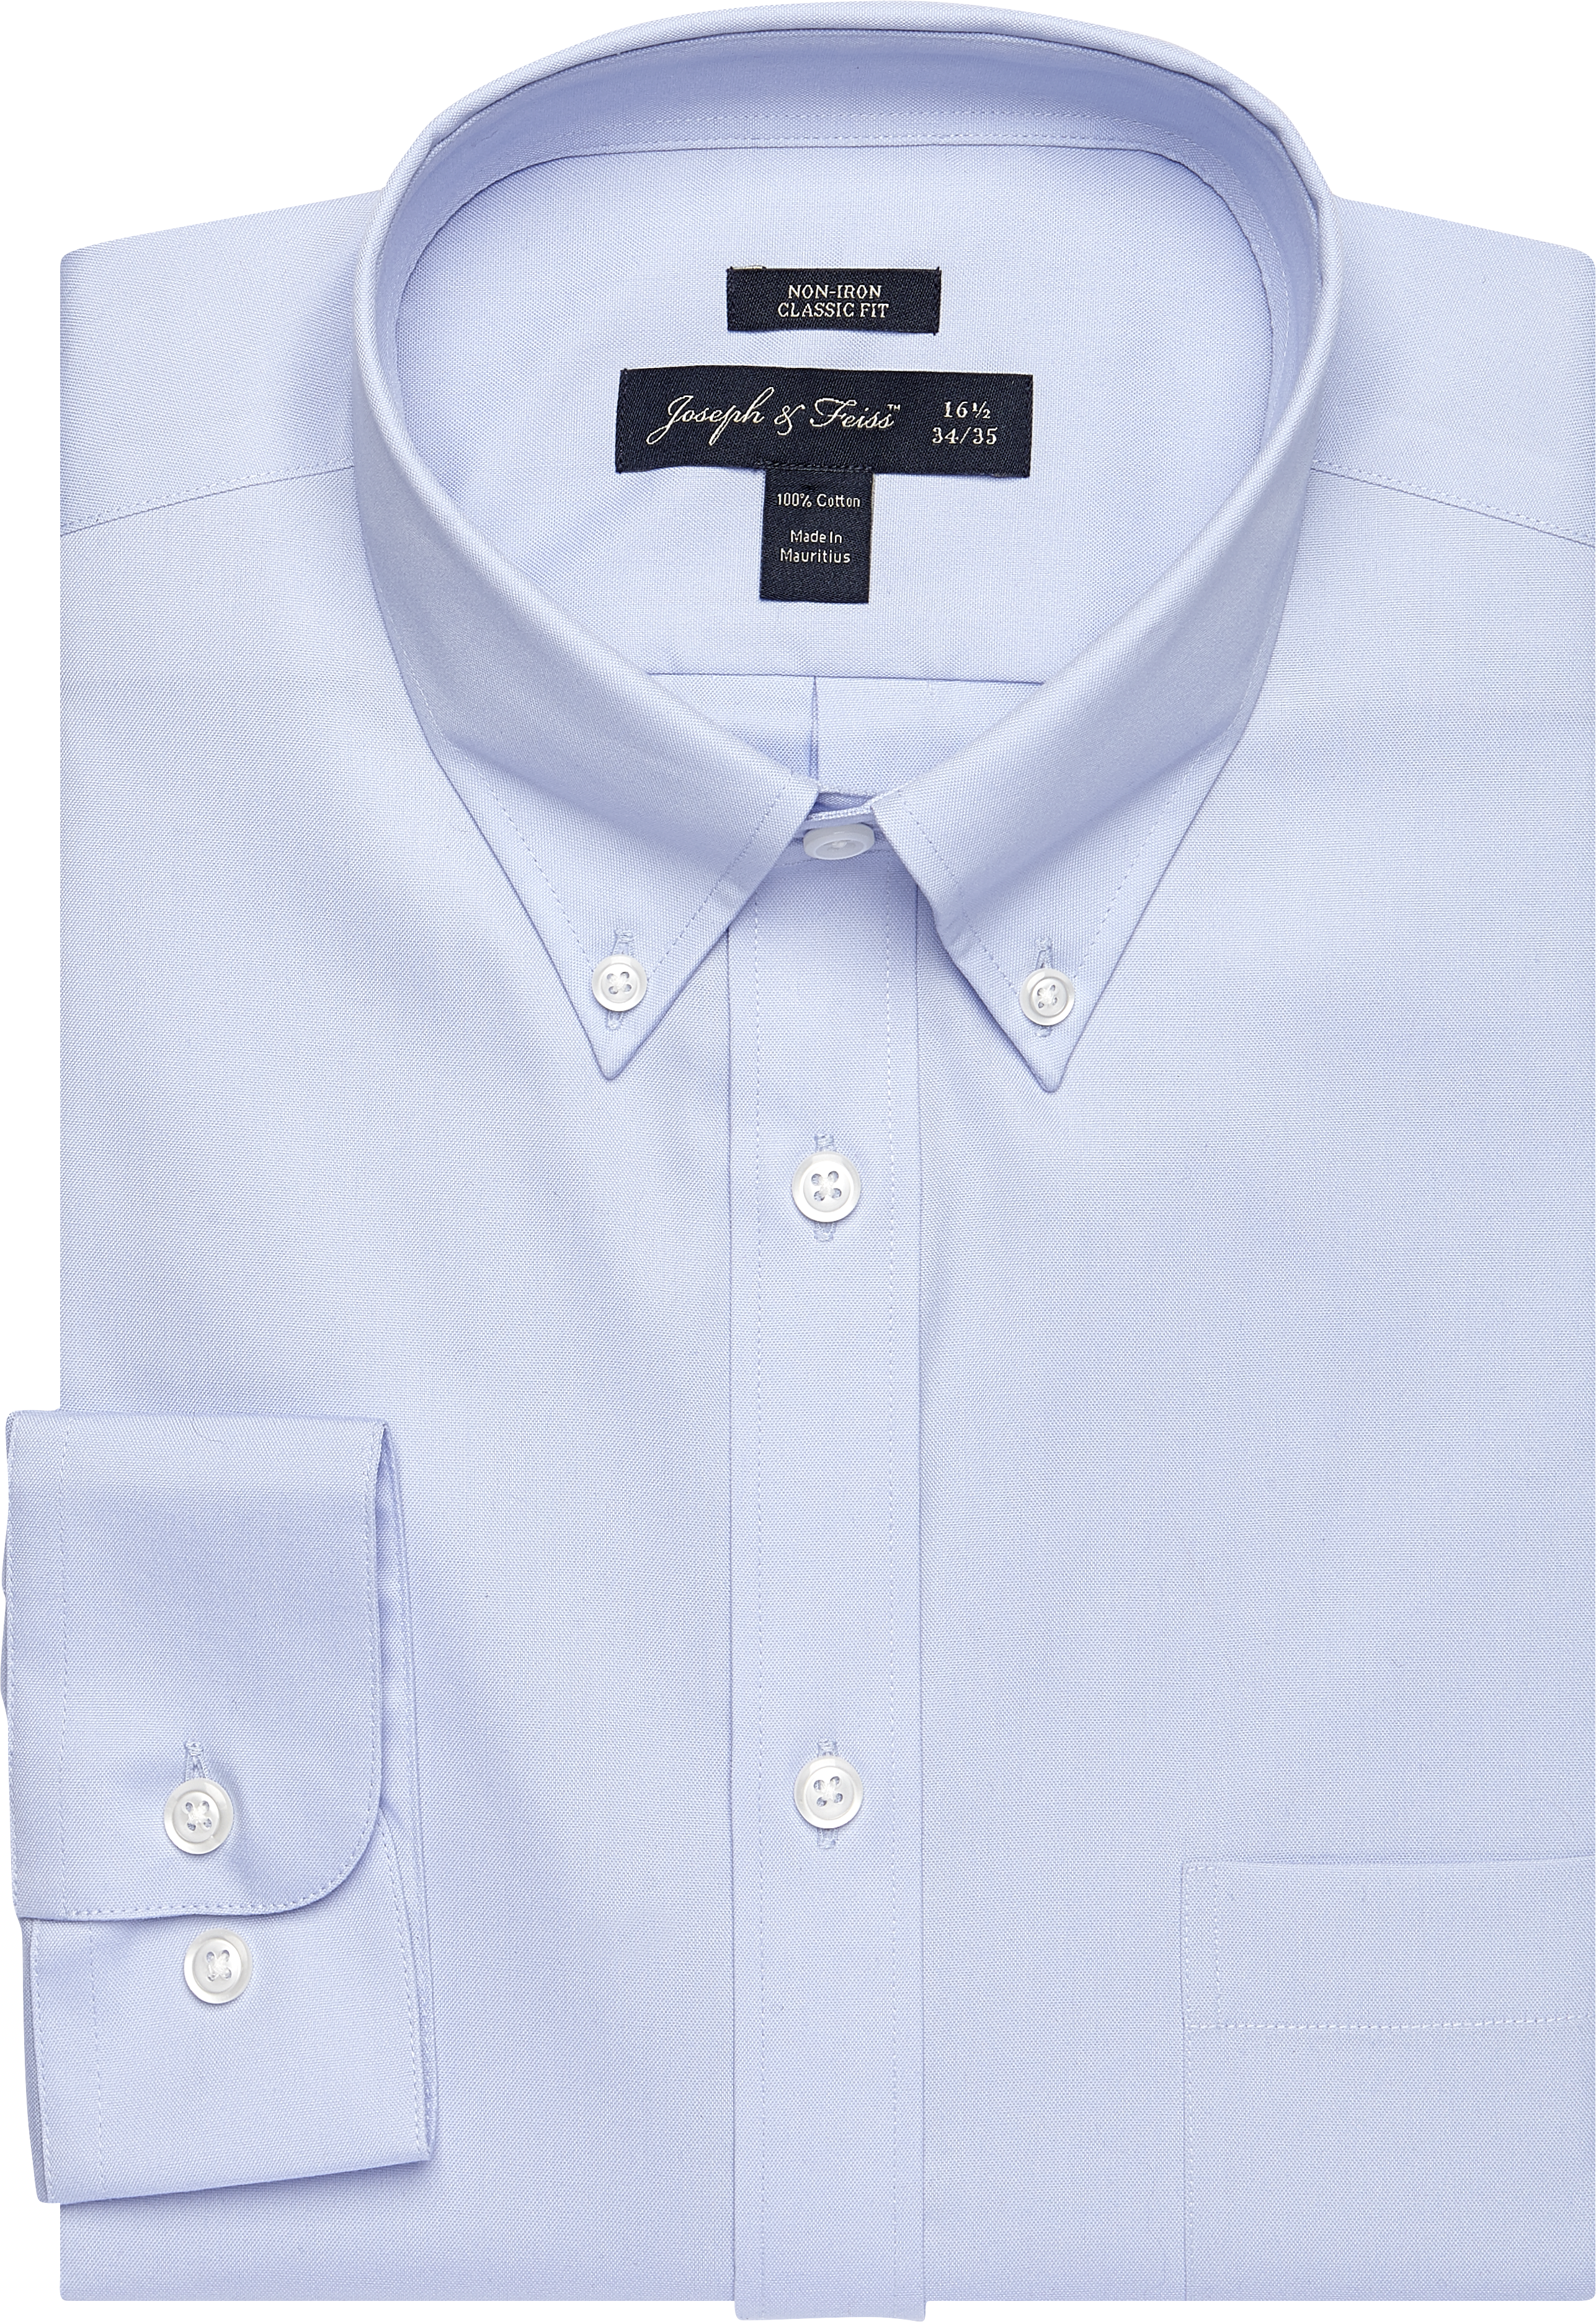 Joseph & Feiss Light Blue Button-Down Classic Fit Dress Shirt - Men's ...